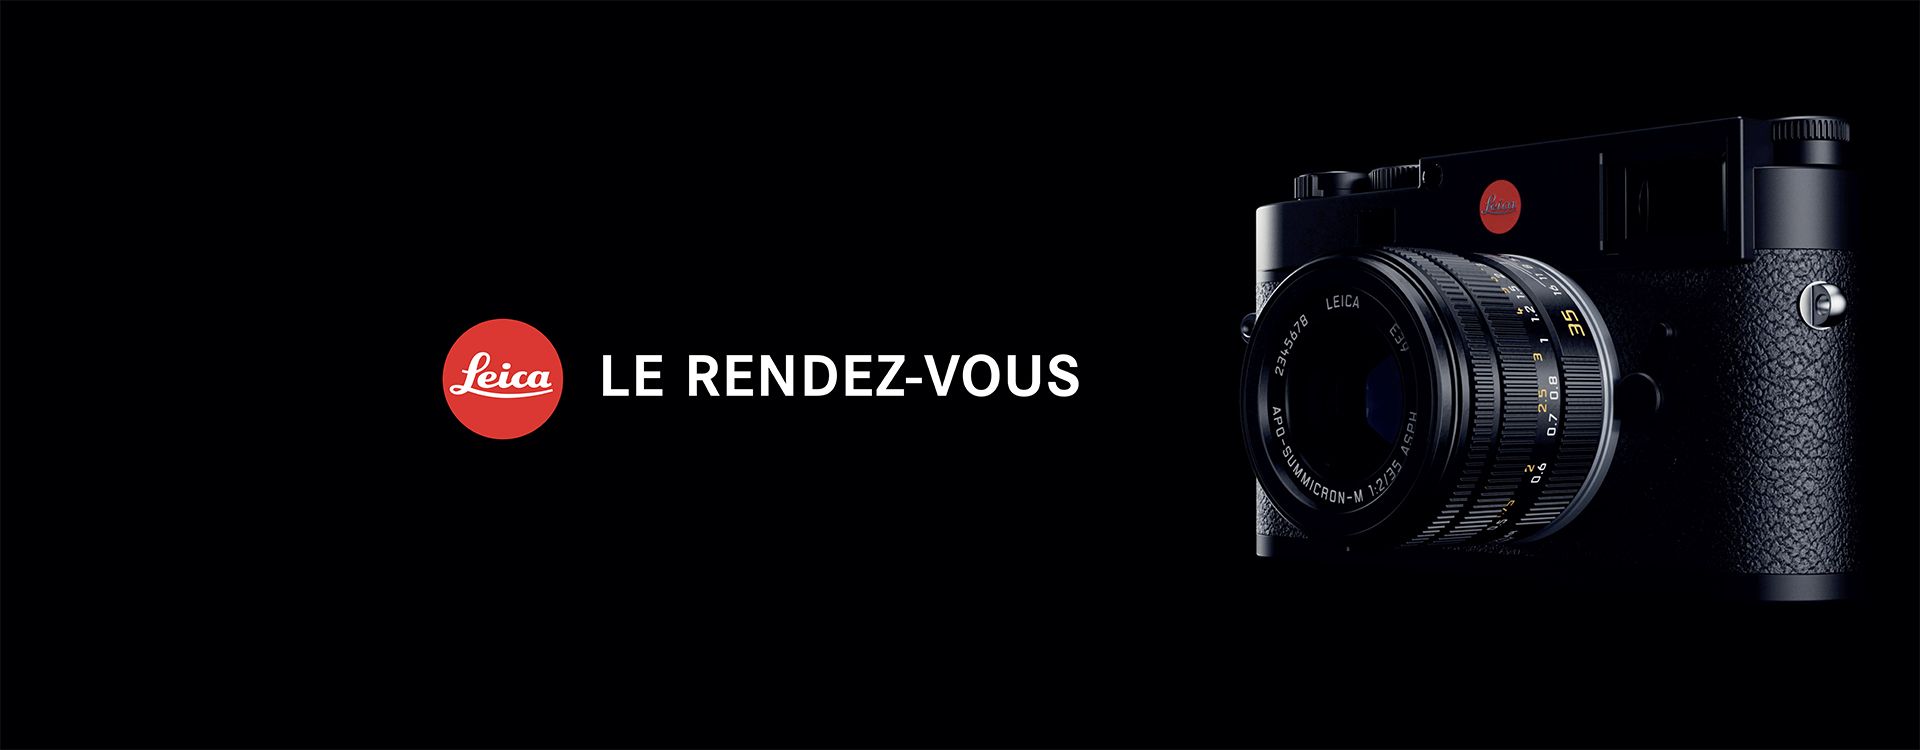 Le rendez-vous Leica